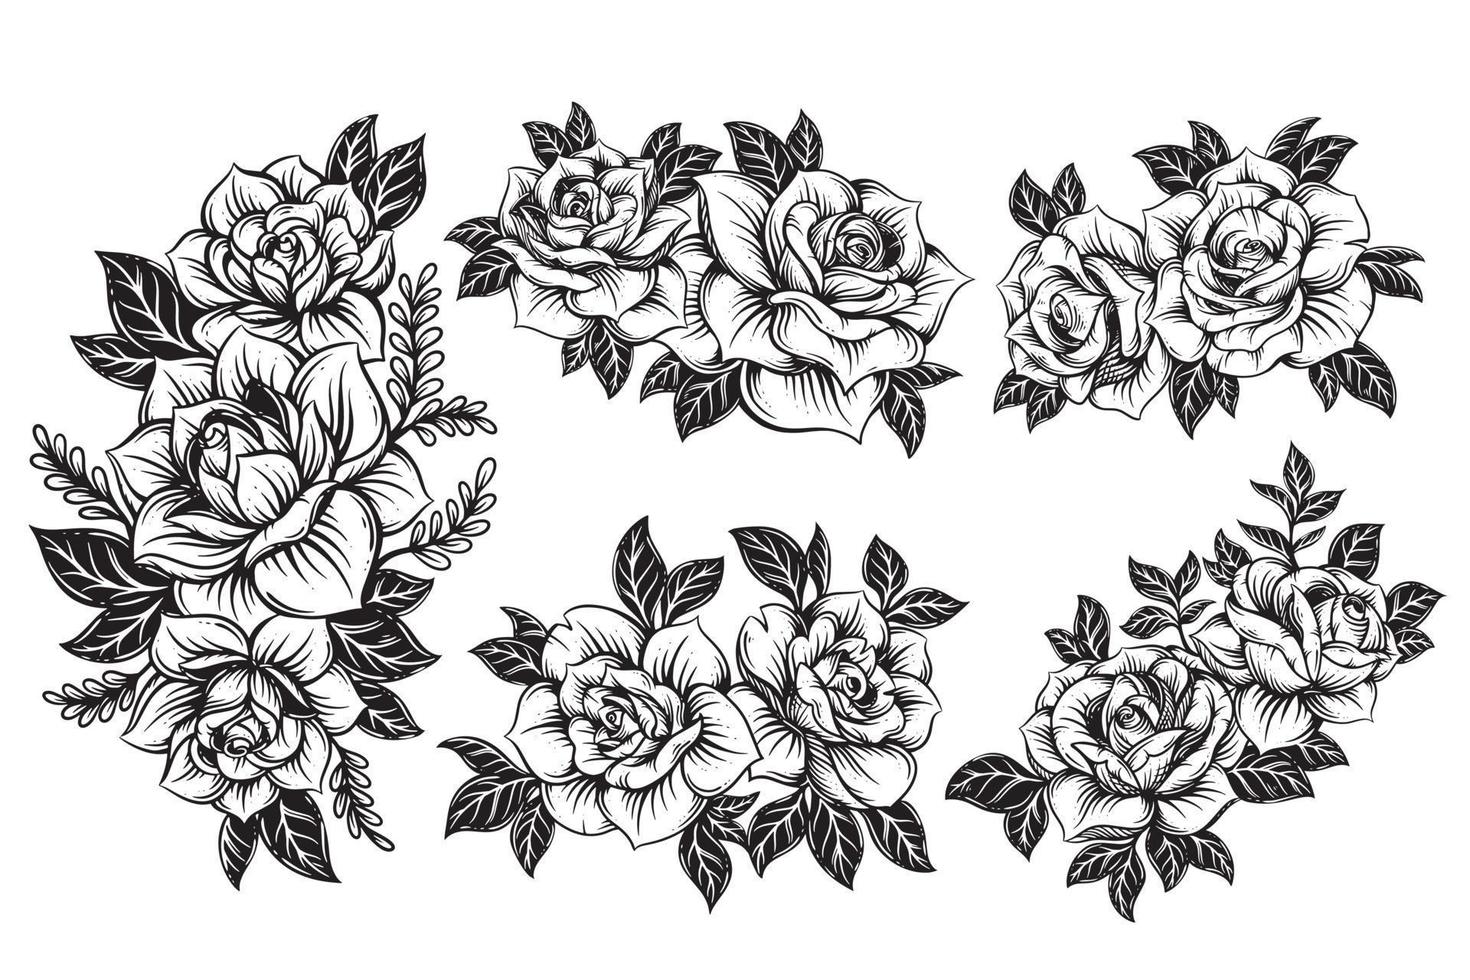 Jahrgang schön Blumen Rose Elemente Blumen Strauß Stengel zum tätowieren Hand gezeichnet Stil vektor